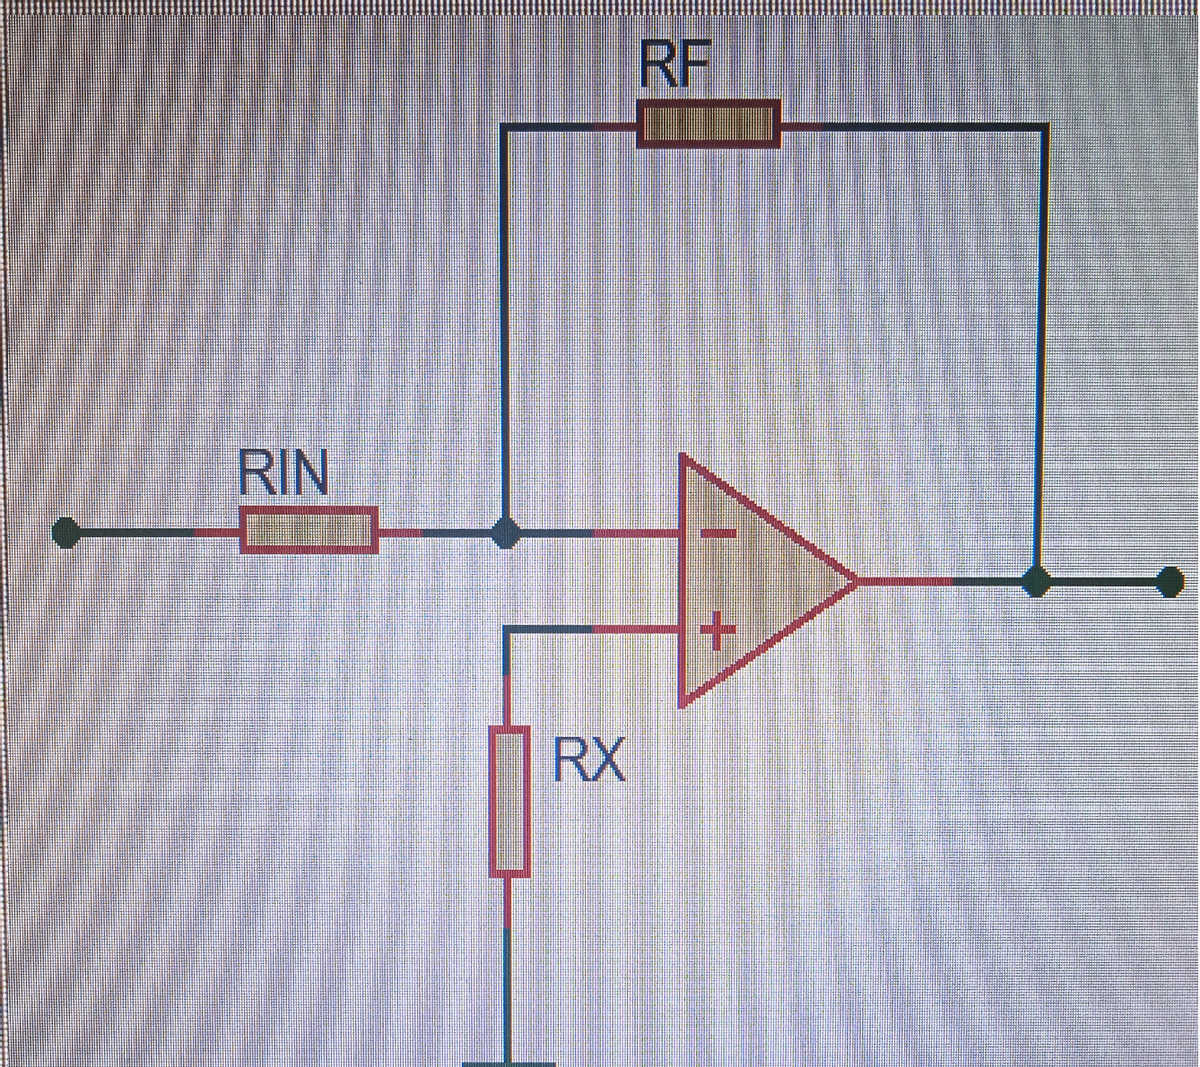 RF
RIN
+.
RX
